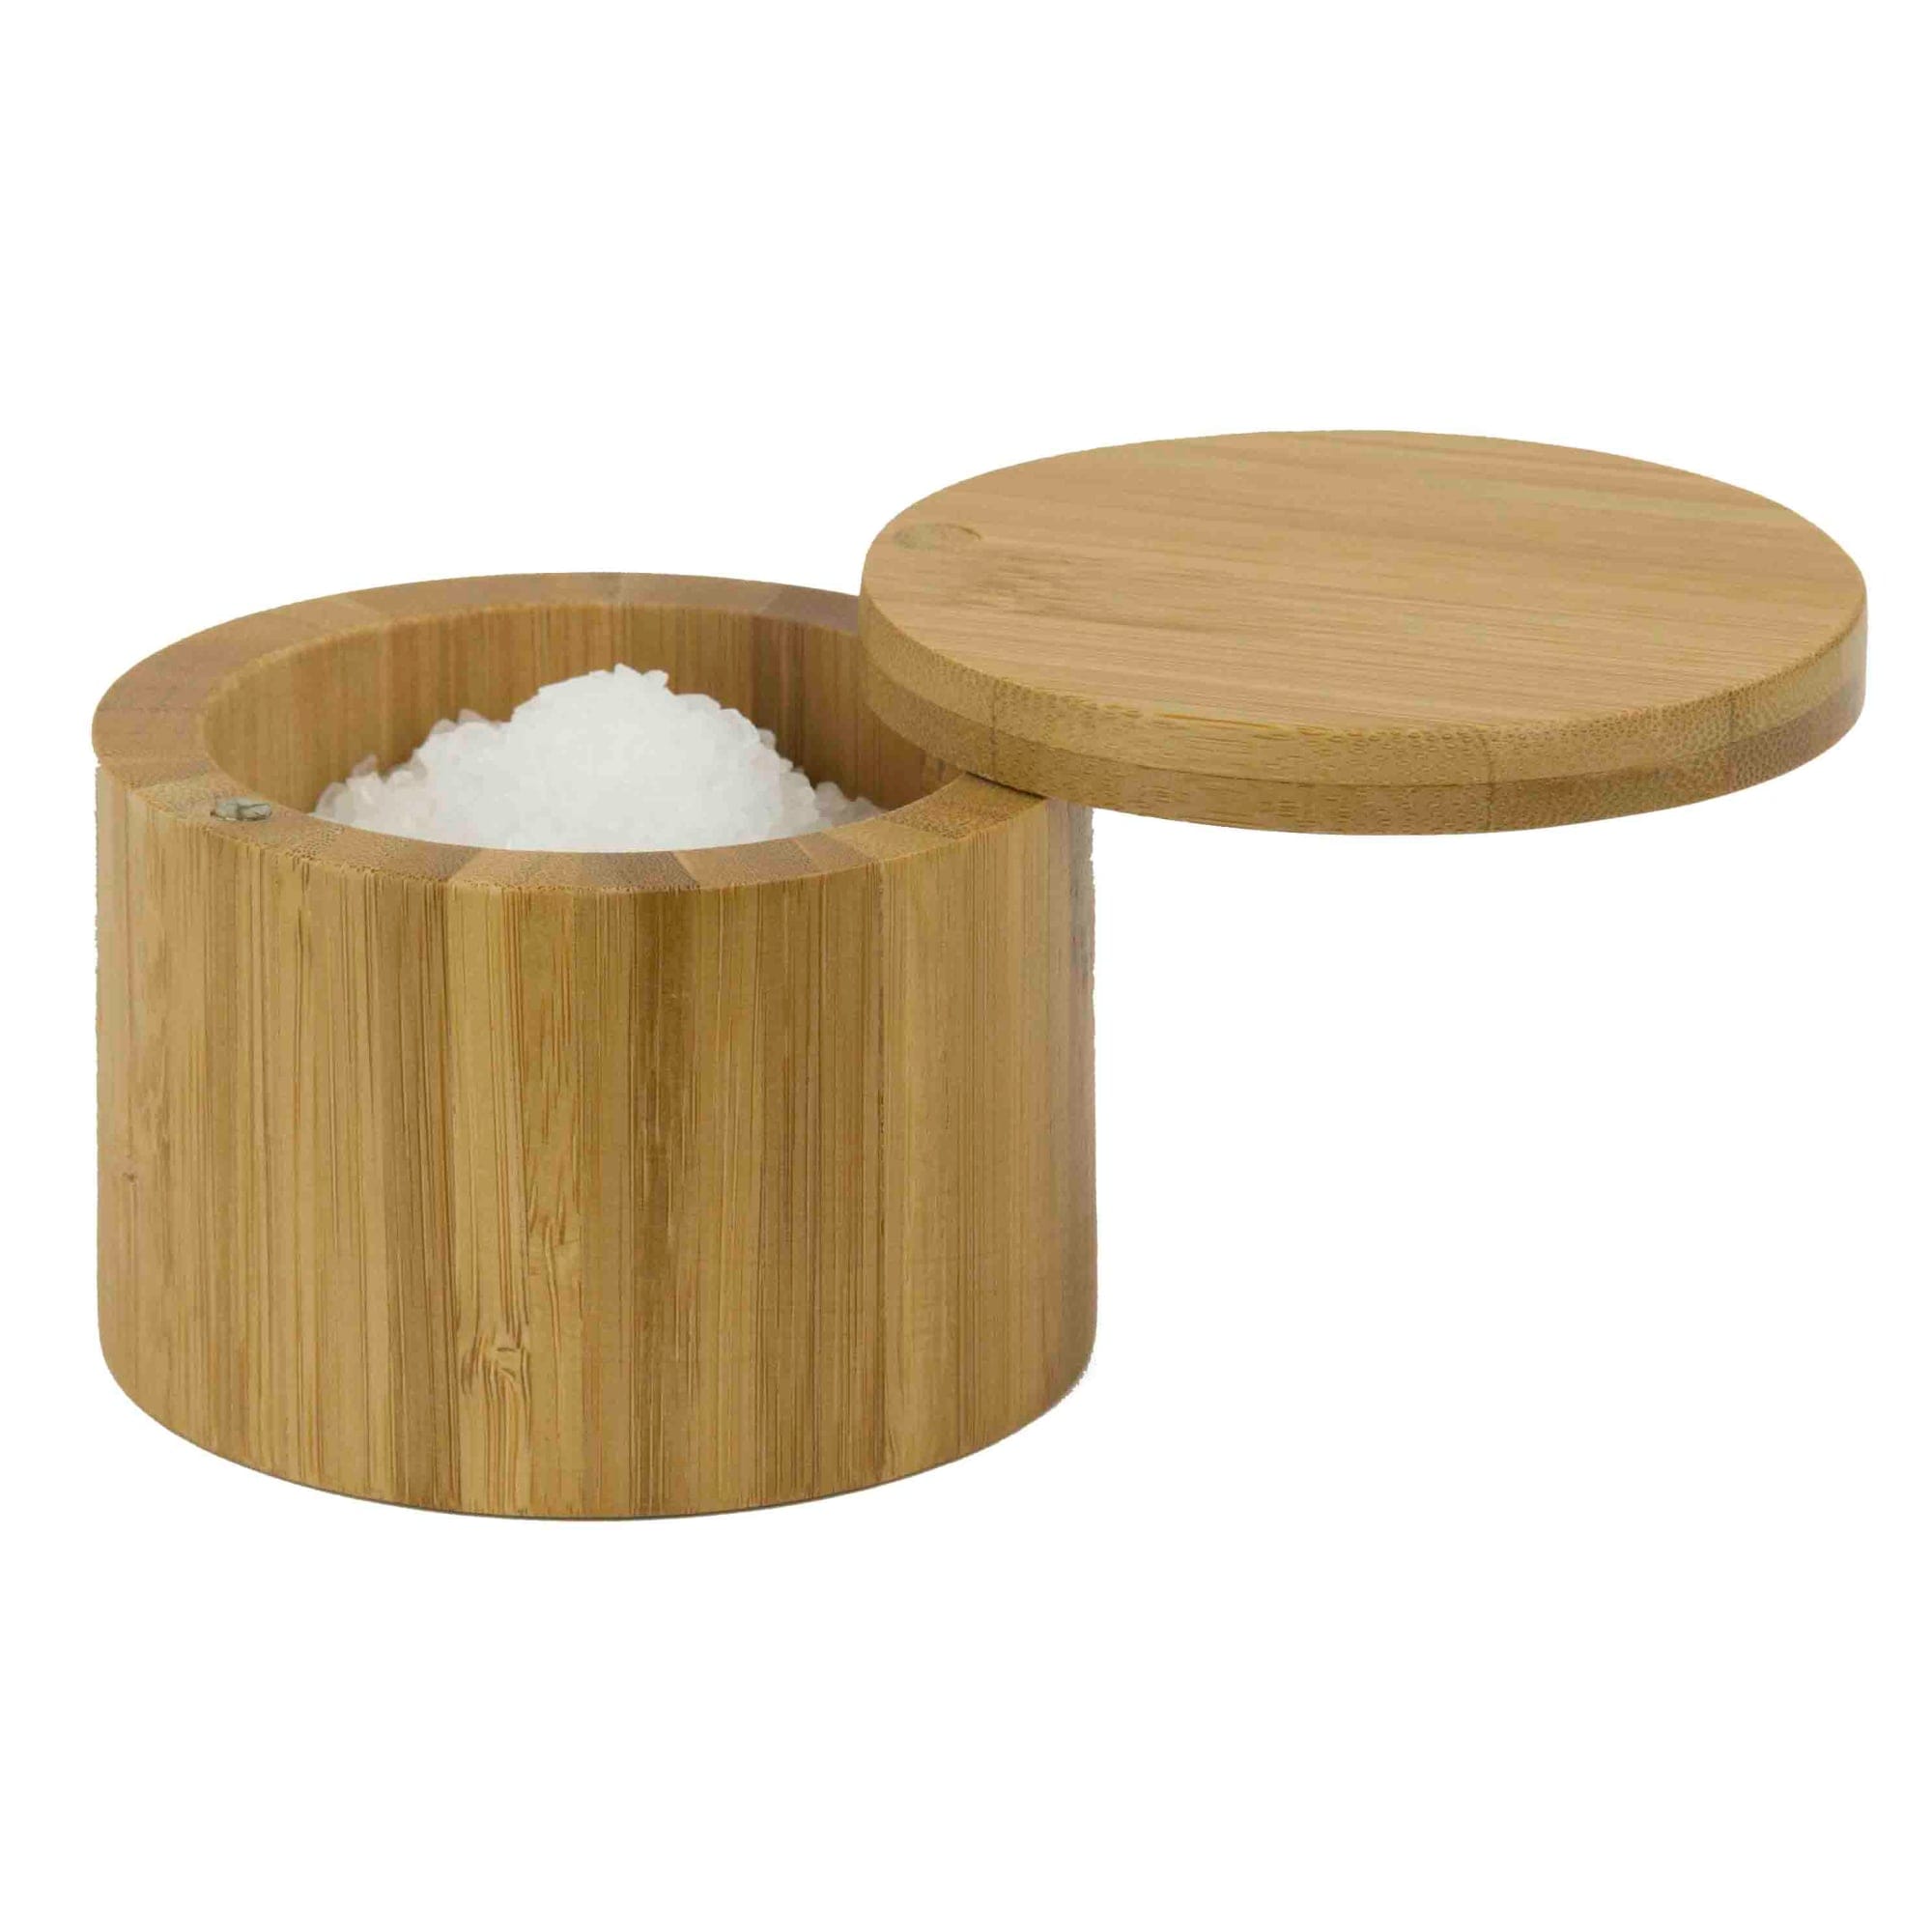 Home Basics Bamboo Salt Box $5.00 EACH, CASE PACK OF 12